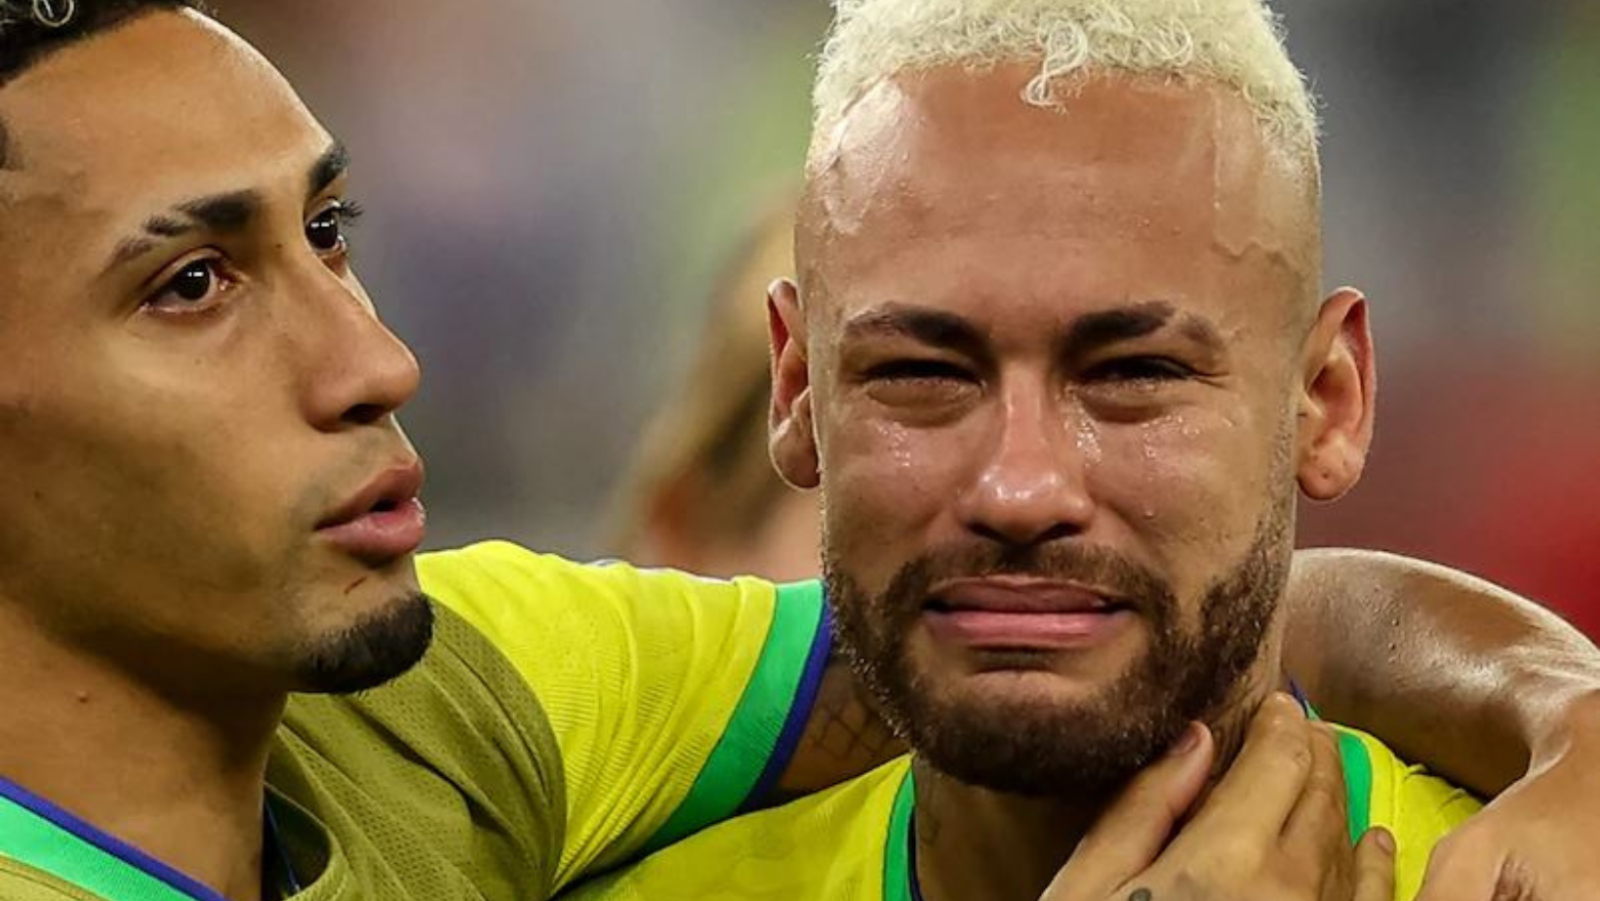 Bại tướng, World Cup, khóc: Thành công và thất bại là hai mặt của đồng tiền. Và trong những trải nghiệm đó, cầu thủ cũng có những lúc không tránh khỏi nước mắt. Hãy xem ảnh bại tướng World Cup khóc để hiểu rõ hơn tâm trạng của họ.